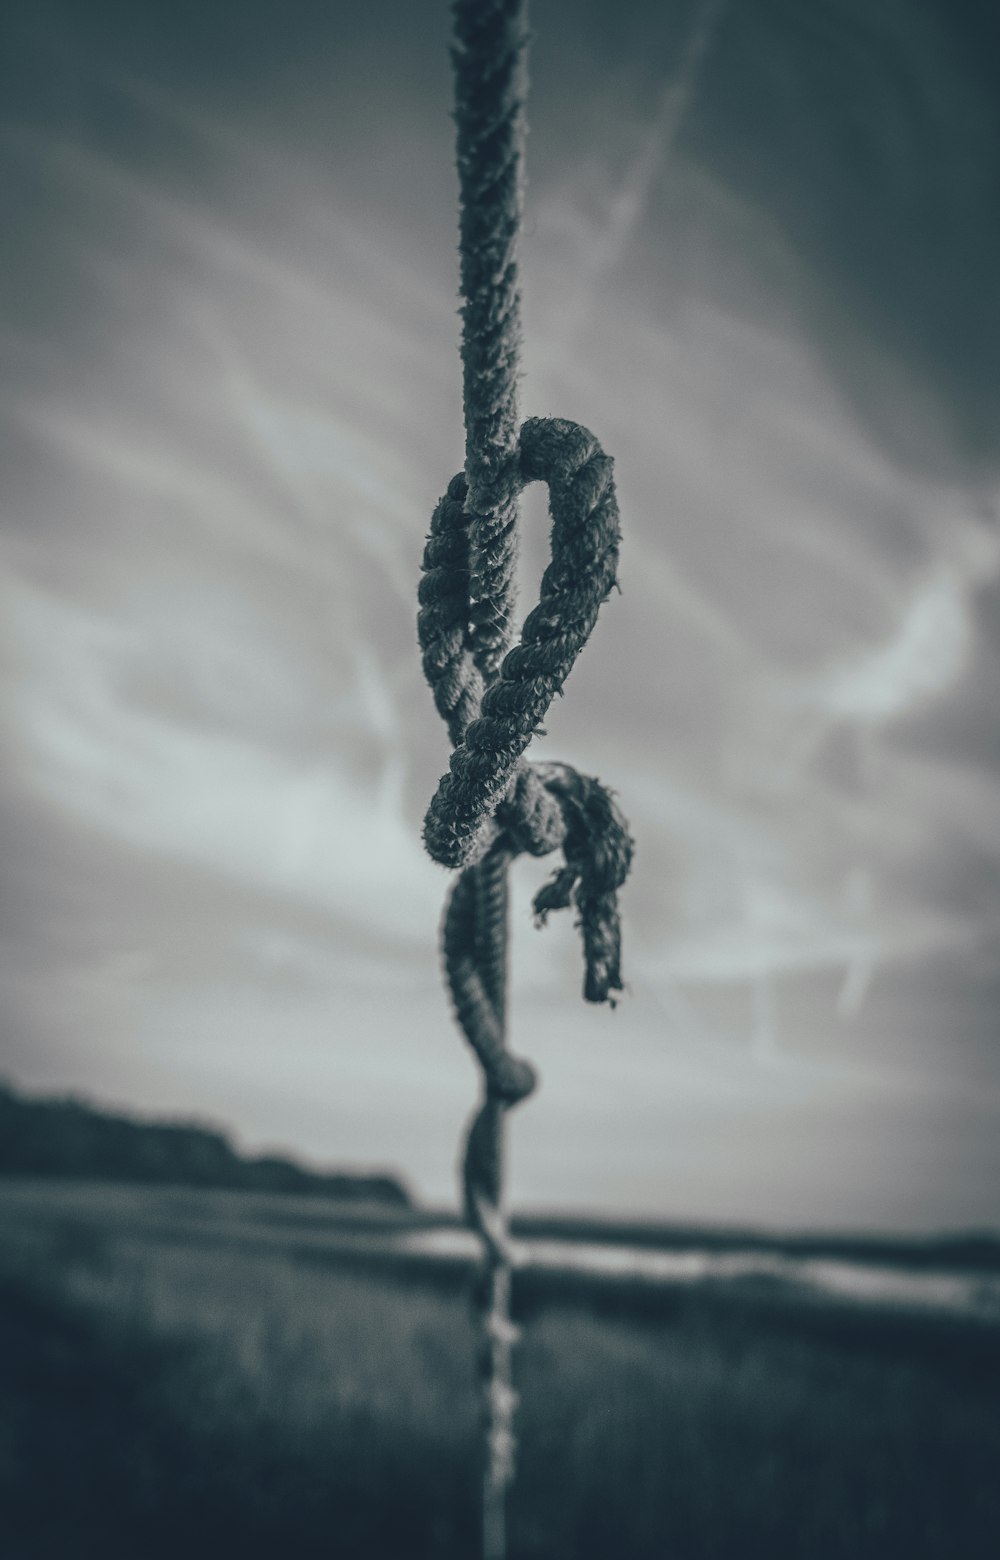 ロープのグレースケール写真